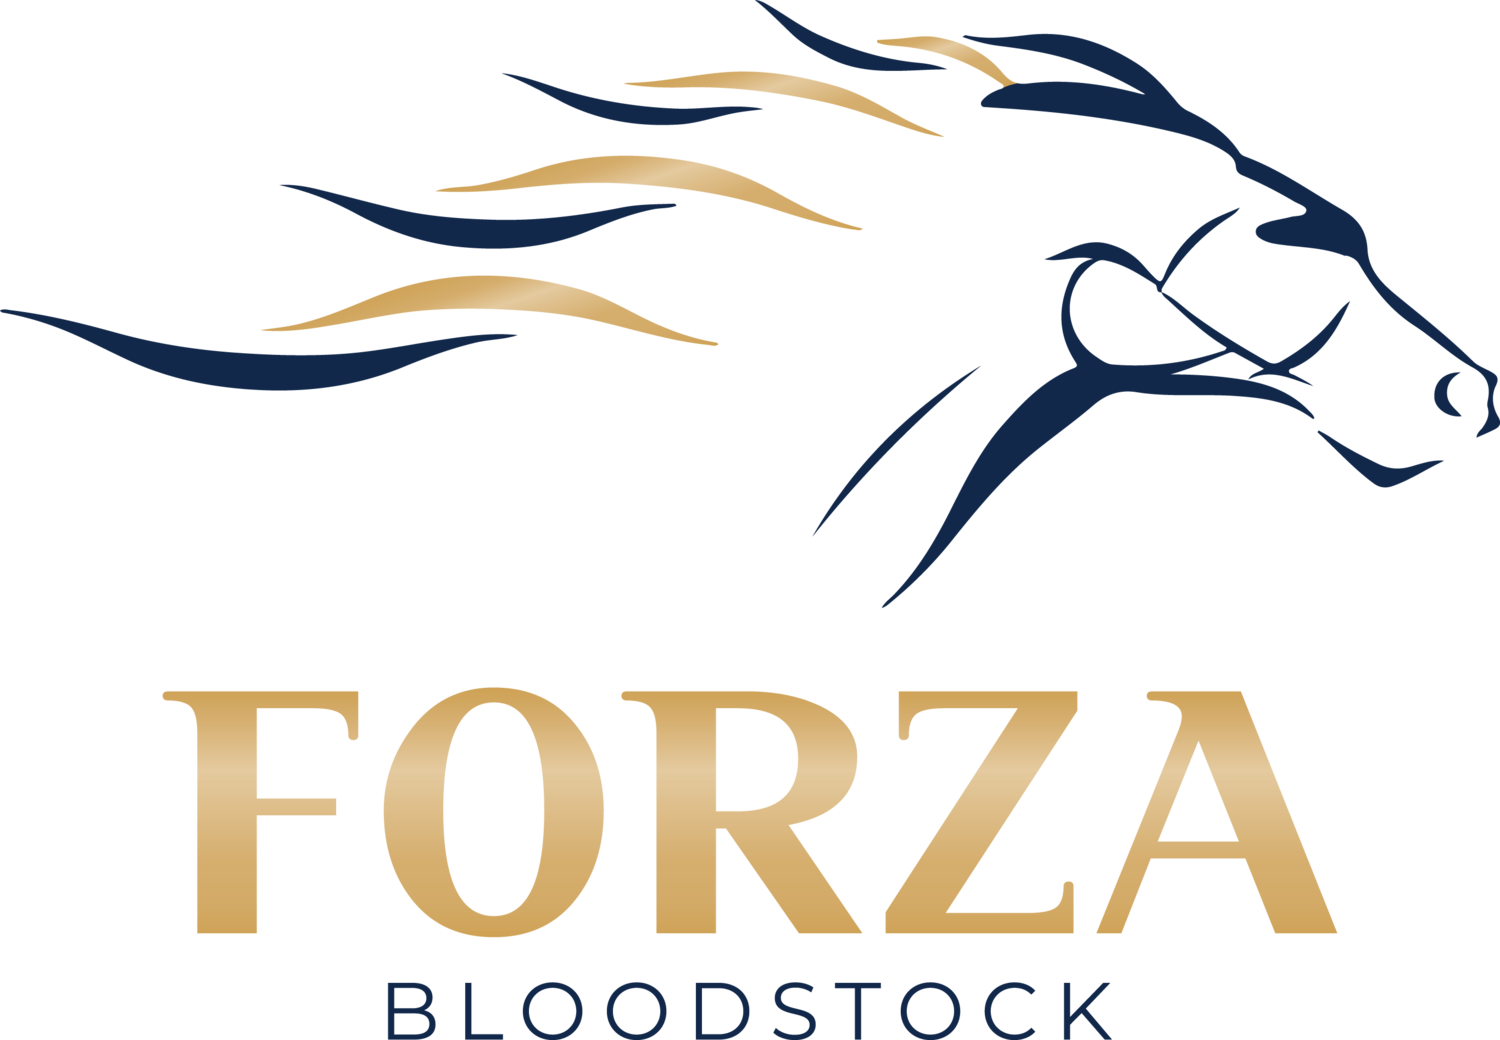 Forza Bloodstock